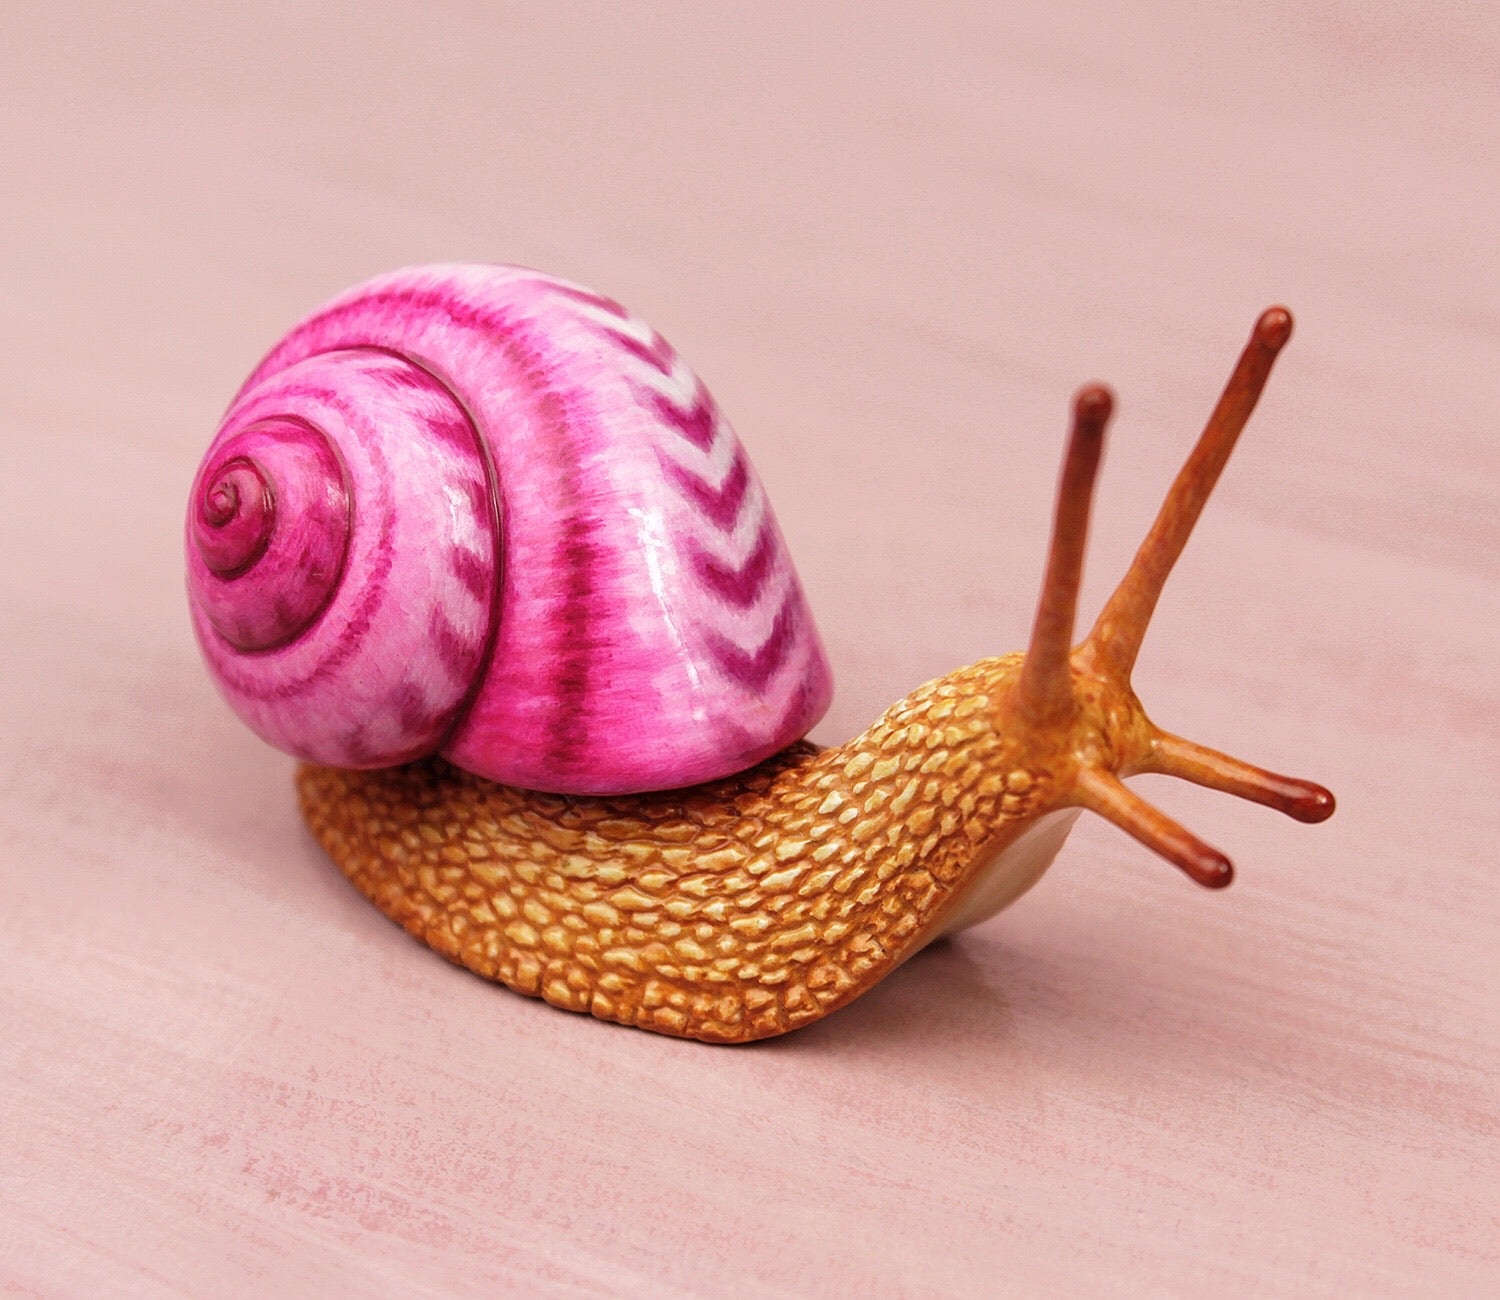 Pink snail